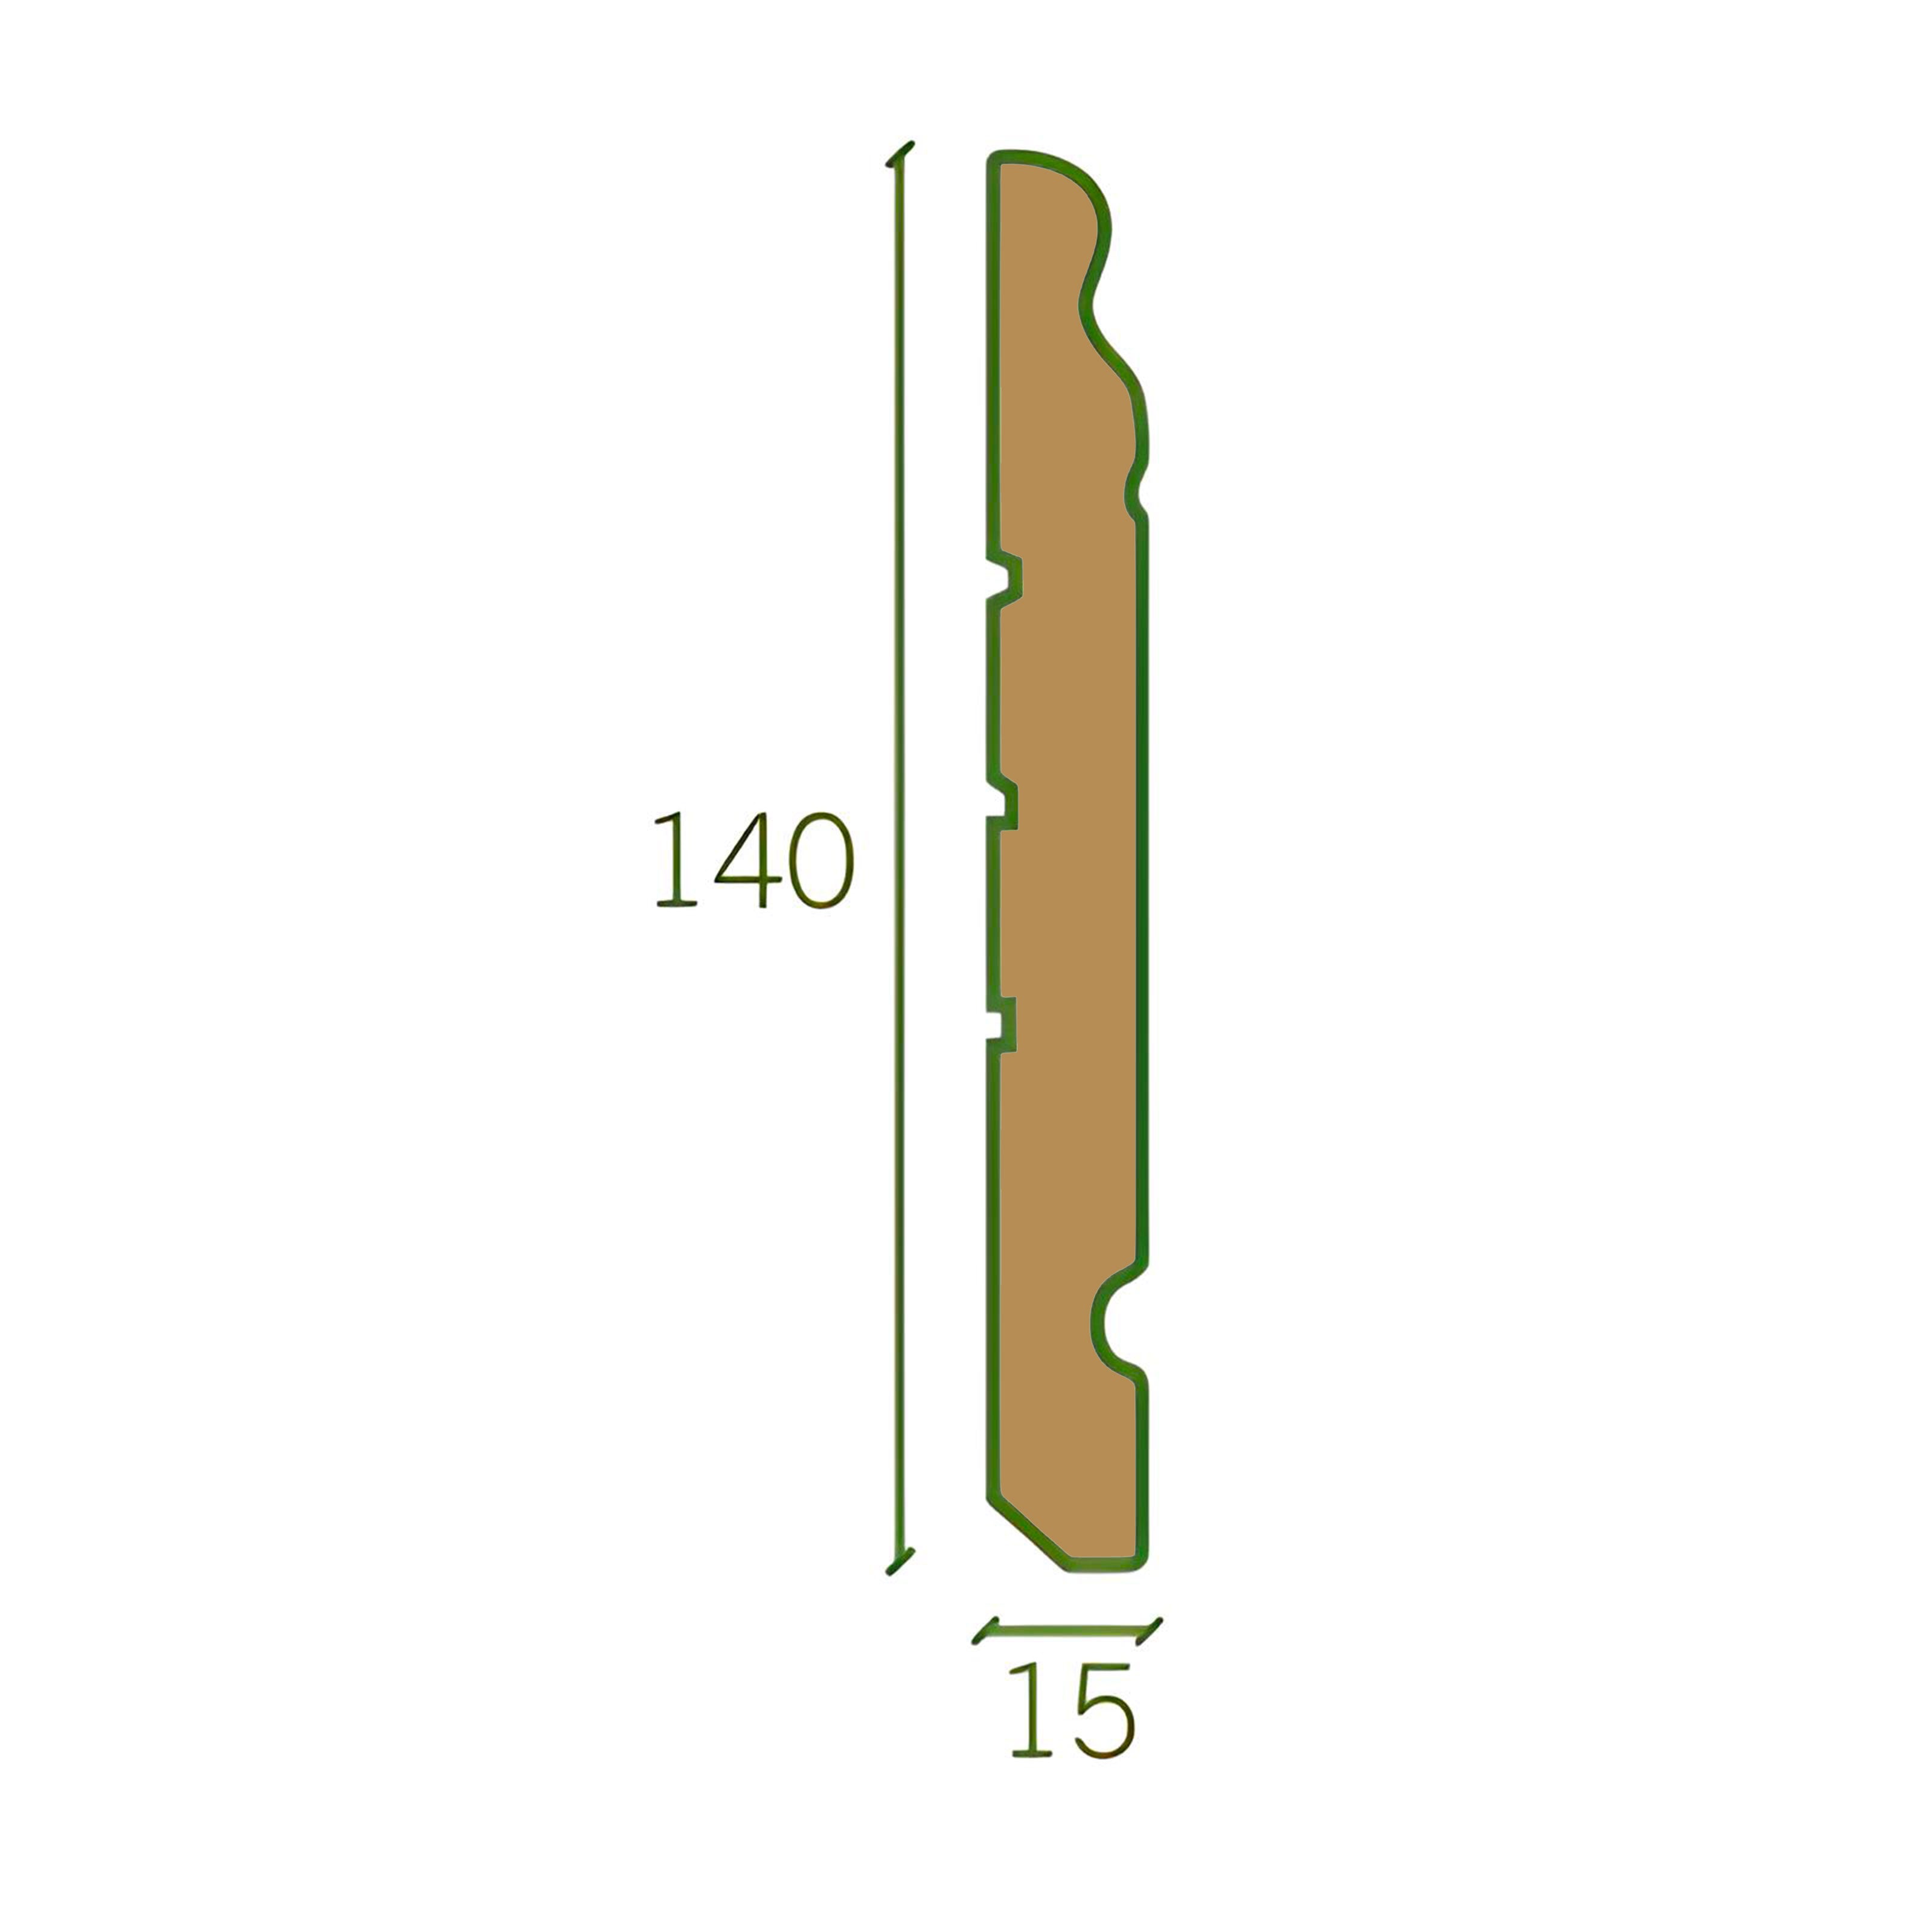 96ML di Battiscopa GRAN DUCALE ROMA LEGNO MASSELLO 140x15mm bianco, grezzo o ral 9010 - Eternal Parquet